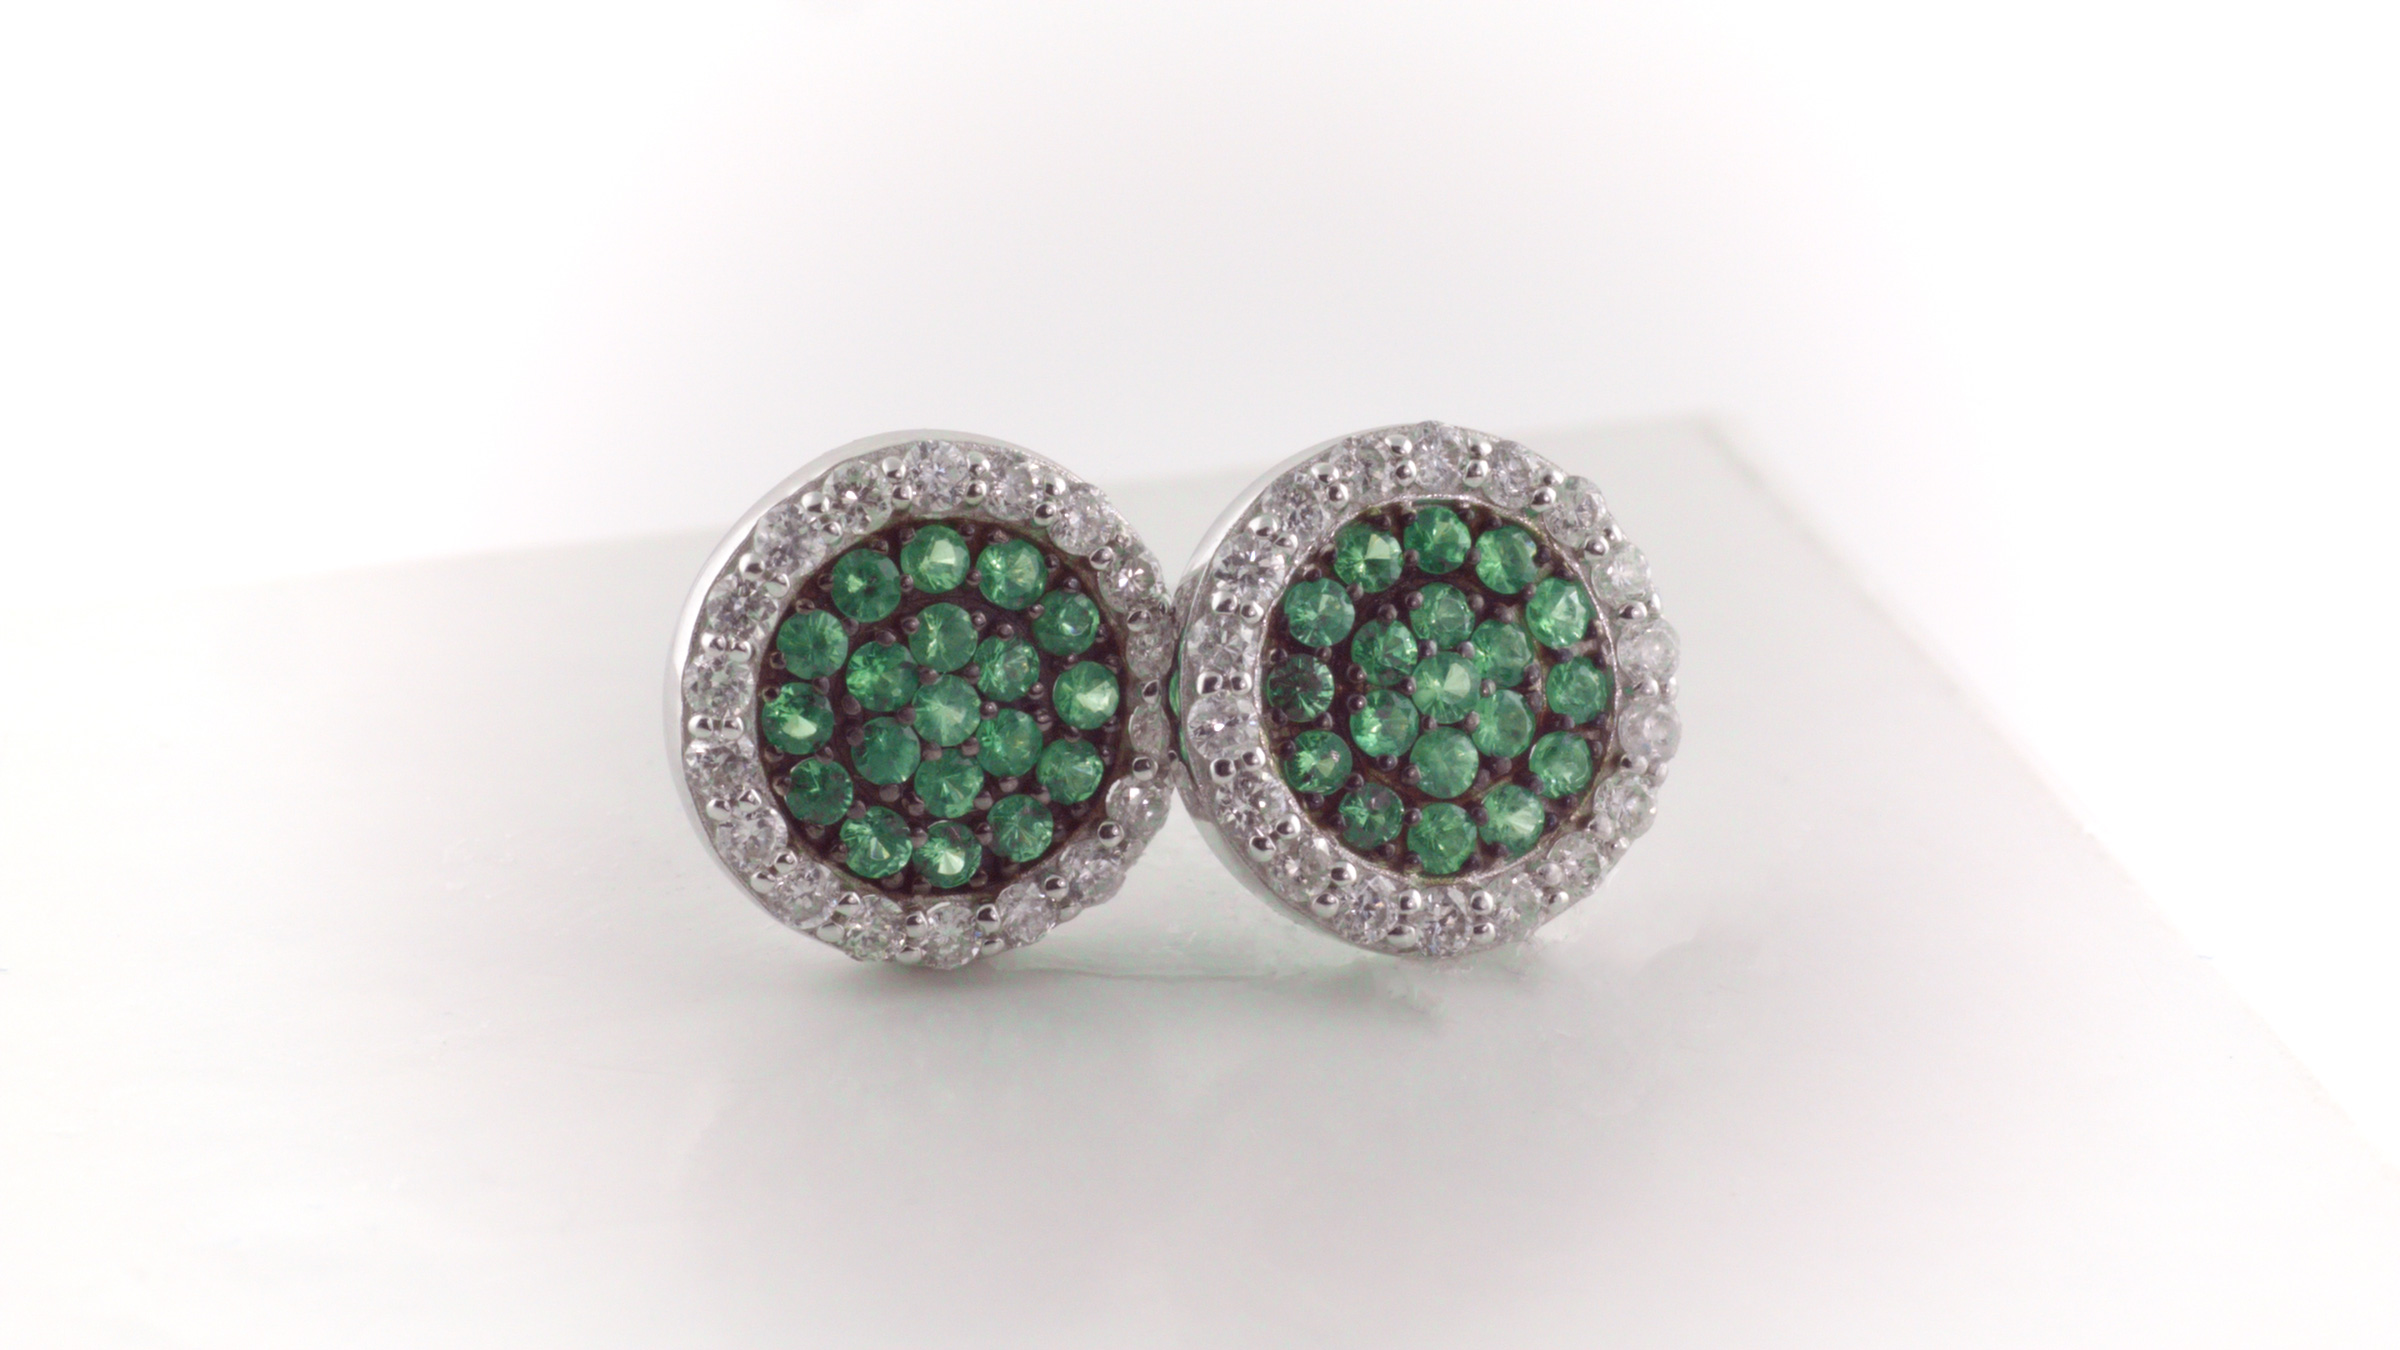 Green tsavorite and diamond earrings in 14K white gold.